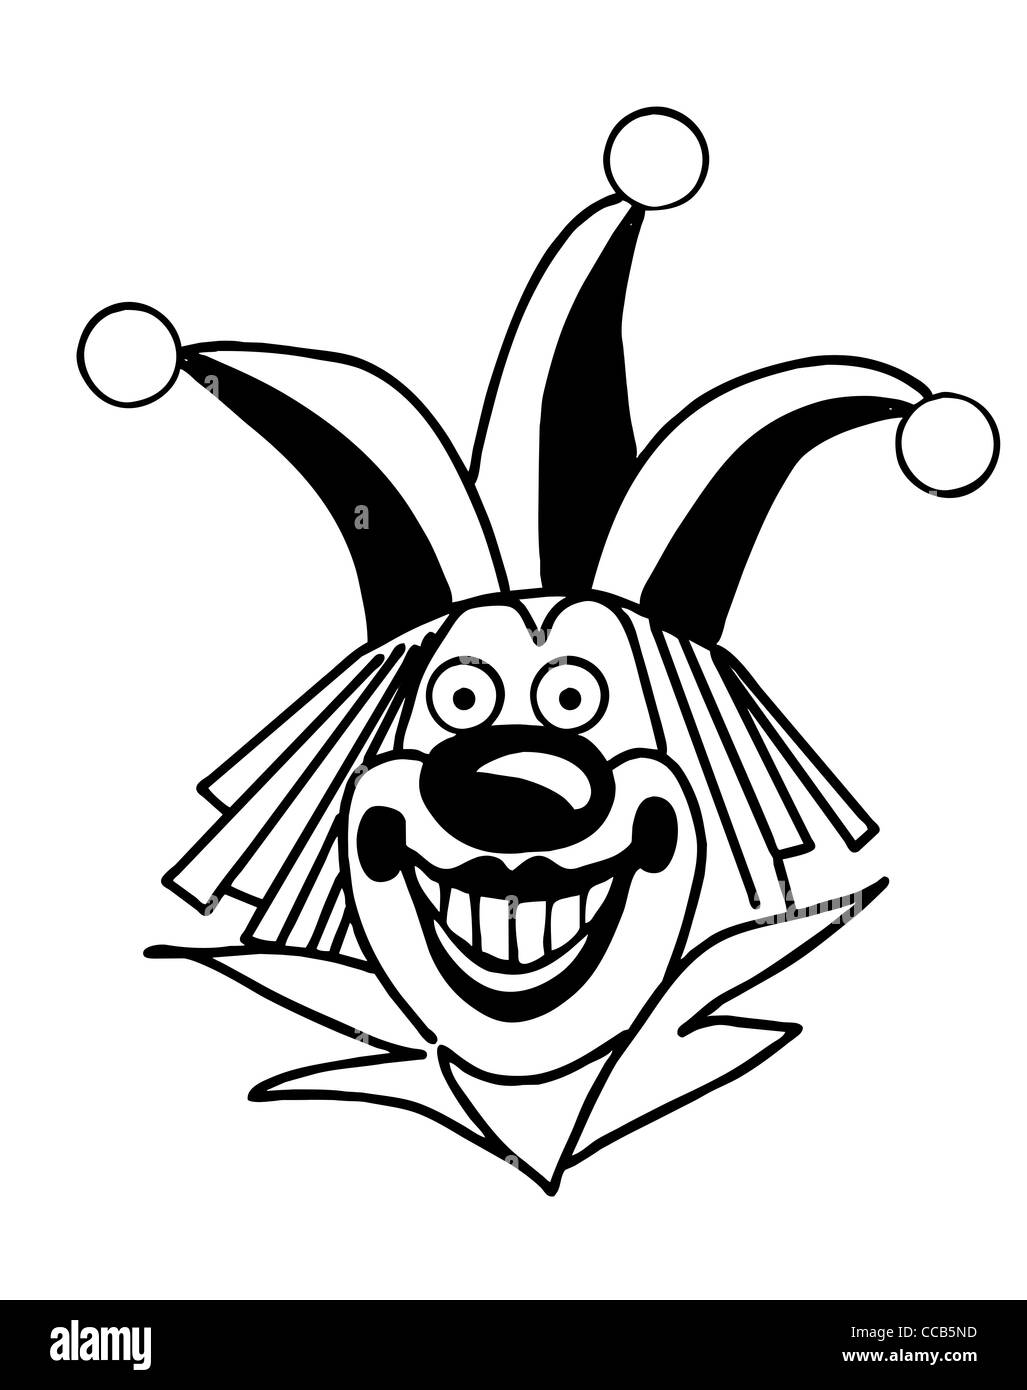 Silhouette vecteur clown sur fond blanc Banque D'Images